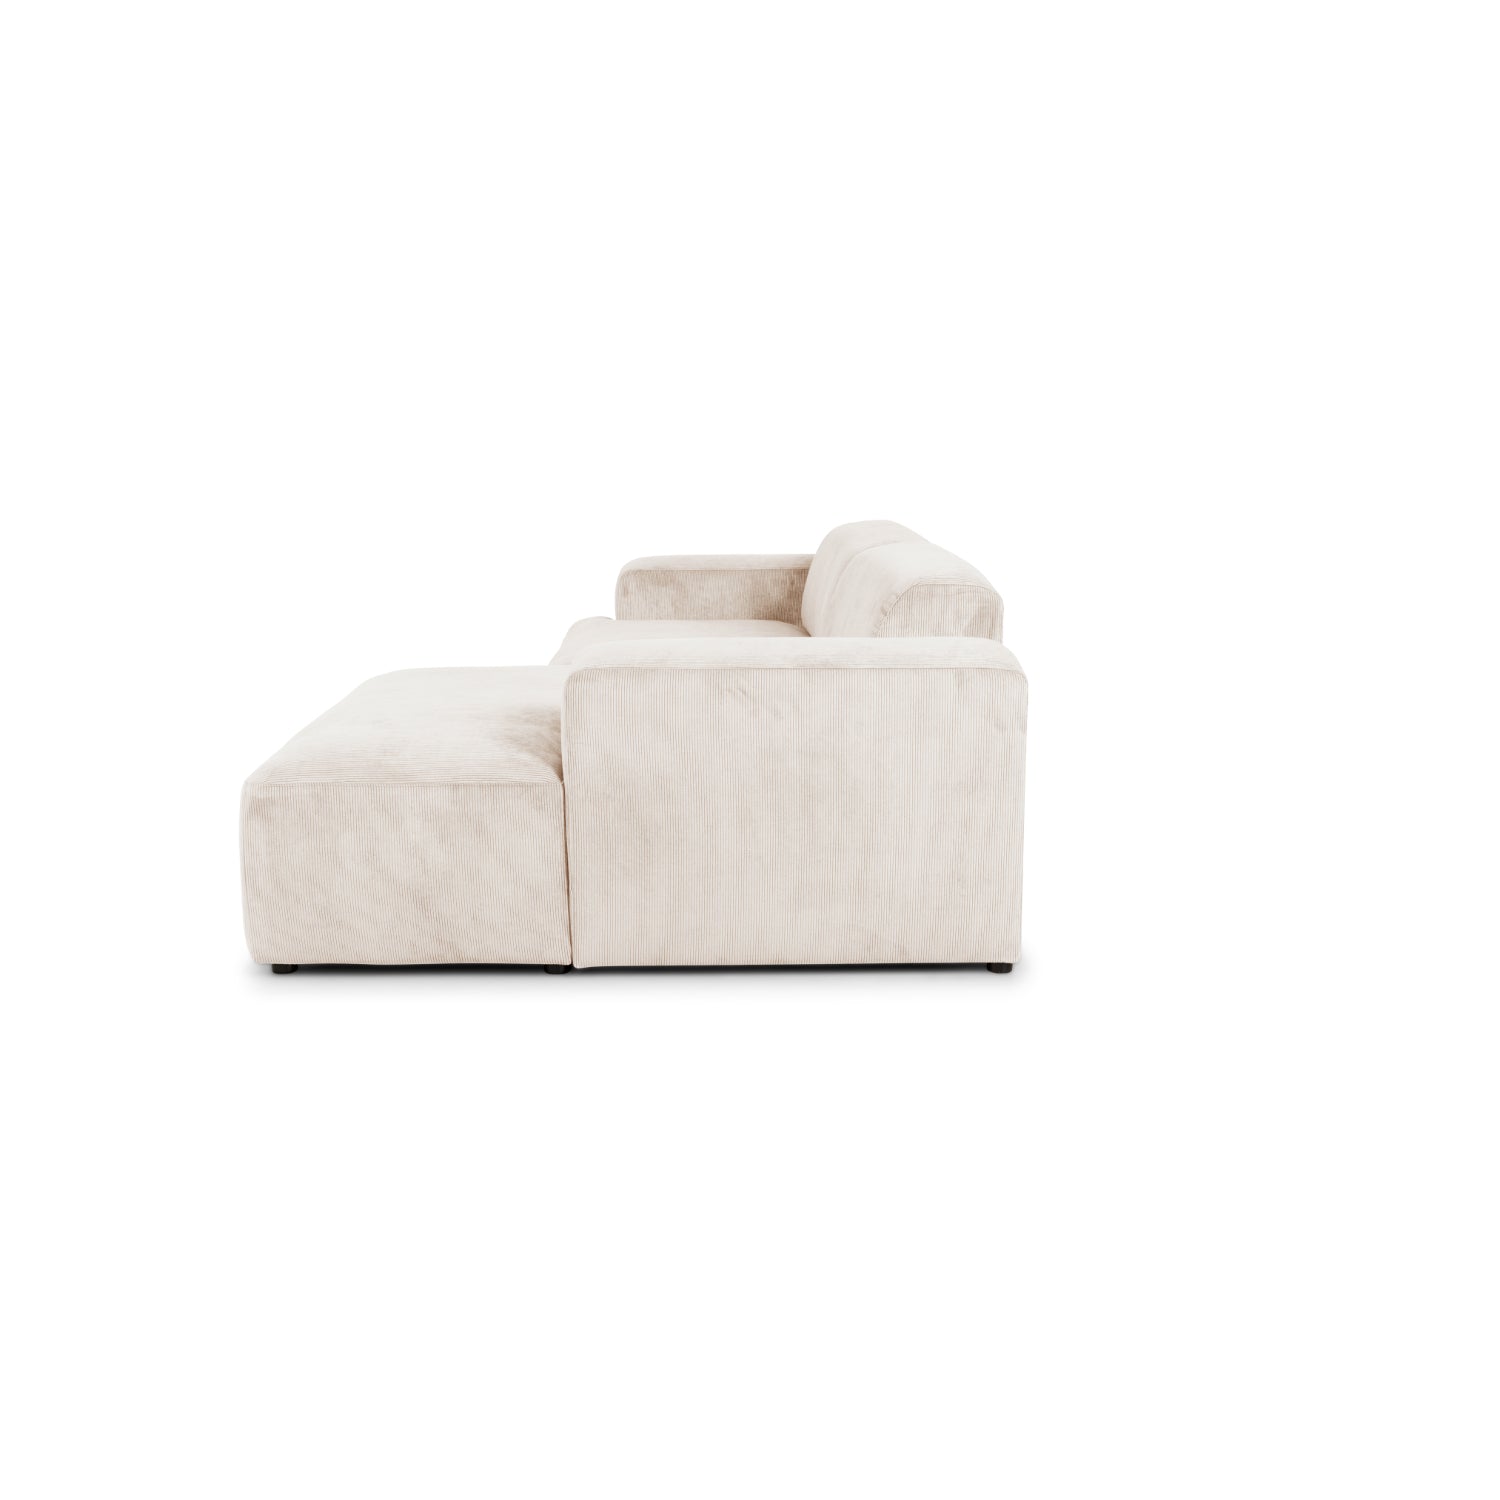 Madrid chaiselong sofa højrevendt. fløjl - Møbelkompagniet